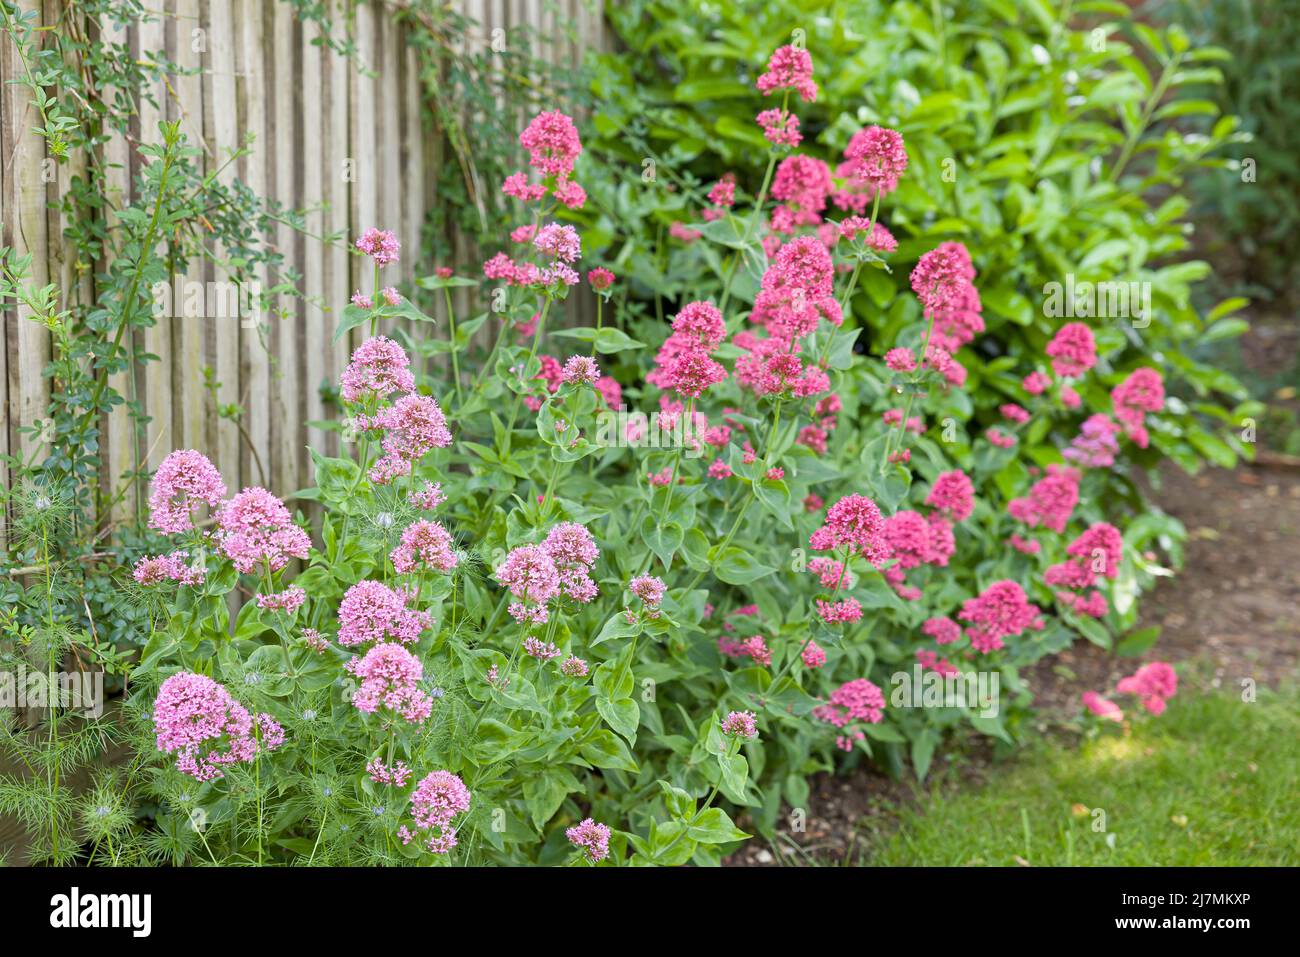 Flores de Valeriana, Valeriana Officinalis, planta perenne que crece en la frontera inglesa del jardín, Reino Unido Foto de stock